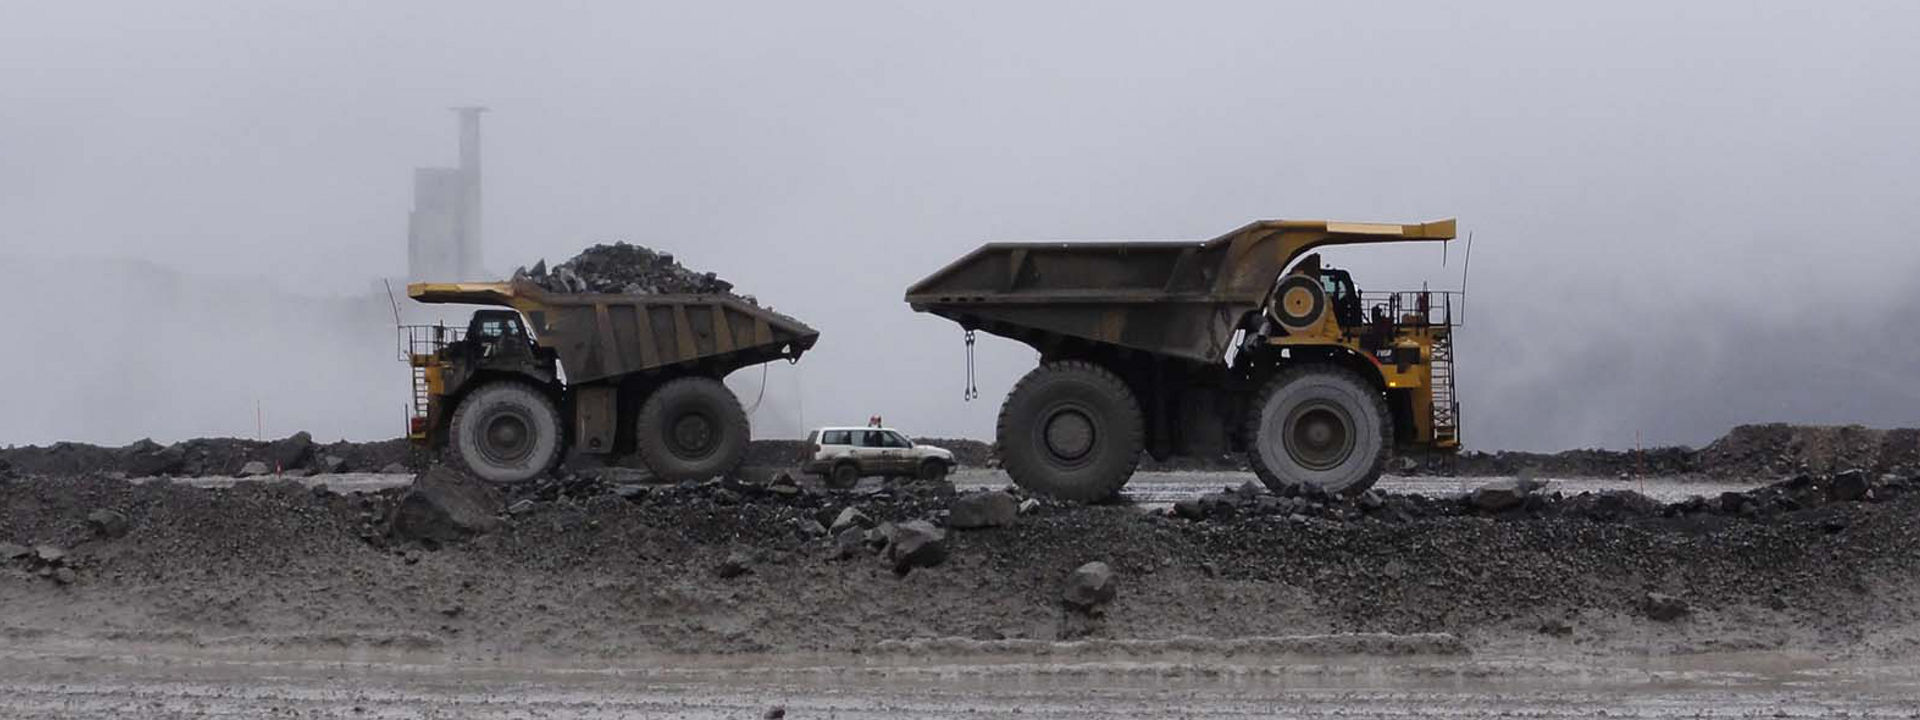 Cztery pojazdy wyposażone w opony Bridgestone pracujące w kopalni odkrywkowej